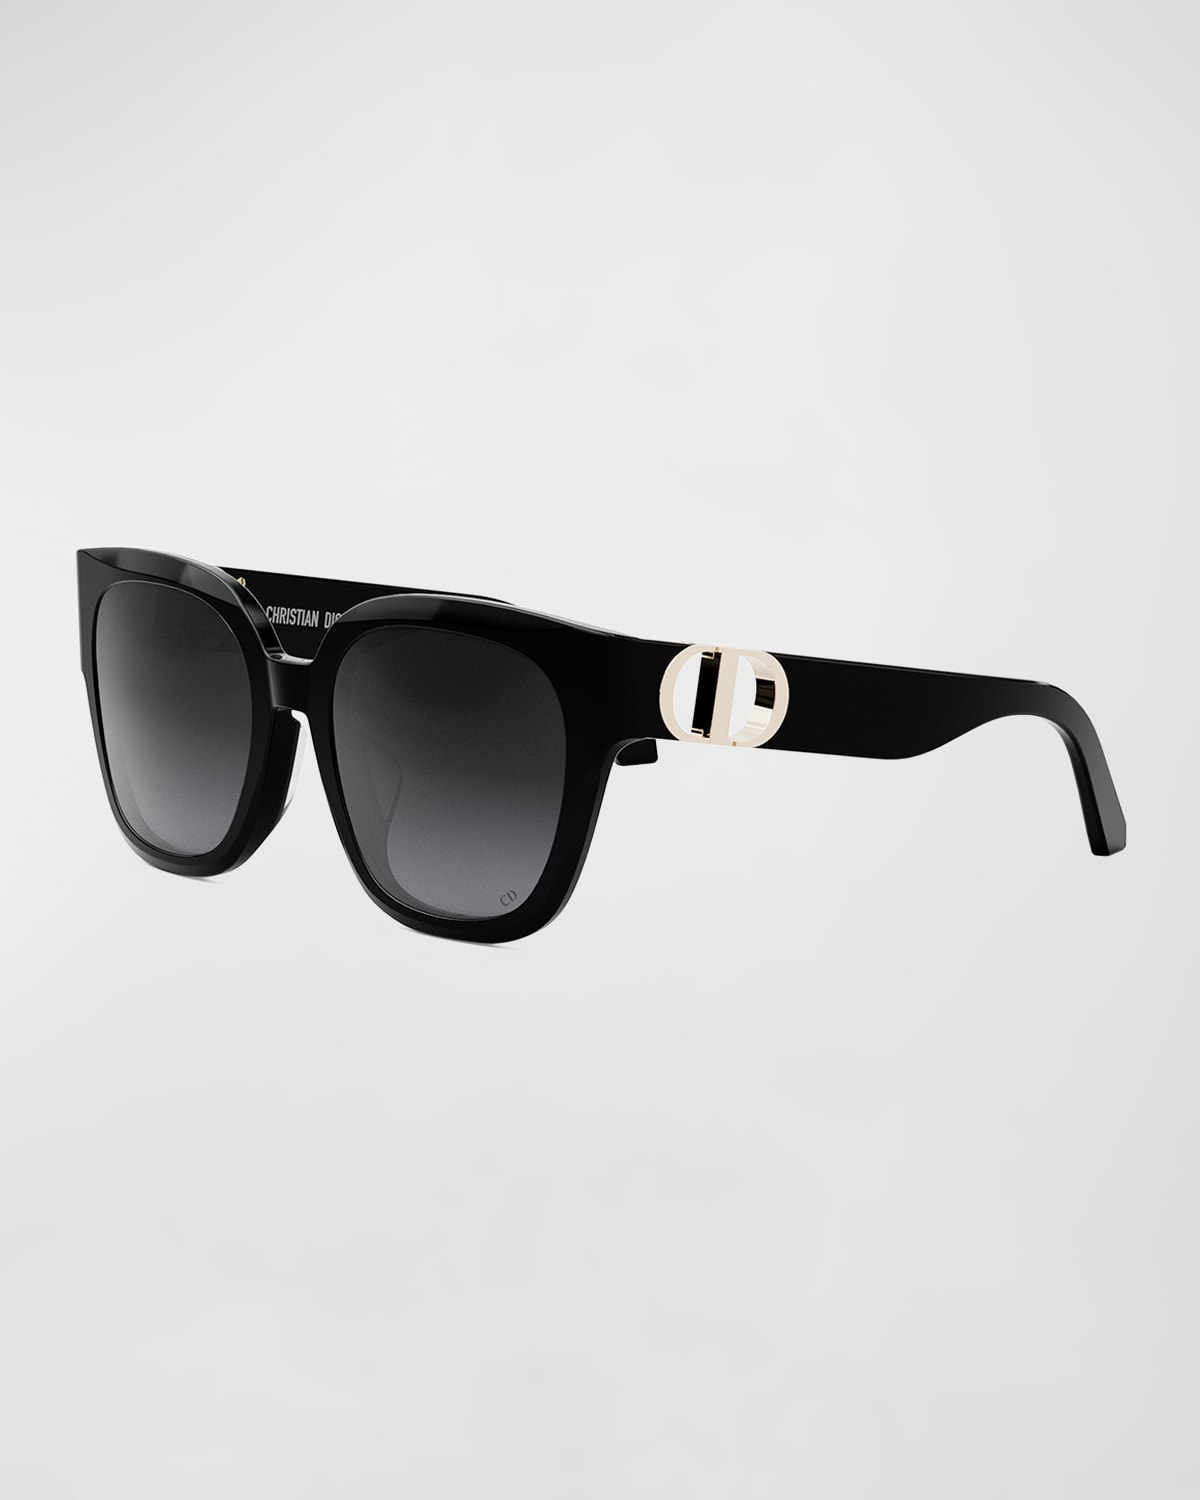 Dior 30montaignw S10f Sunglasses In Black